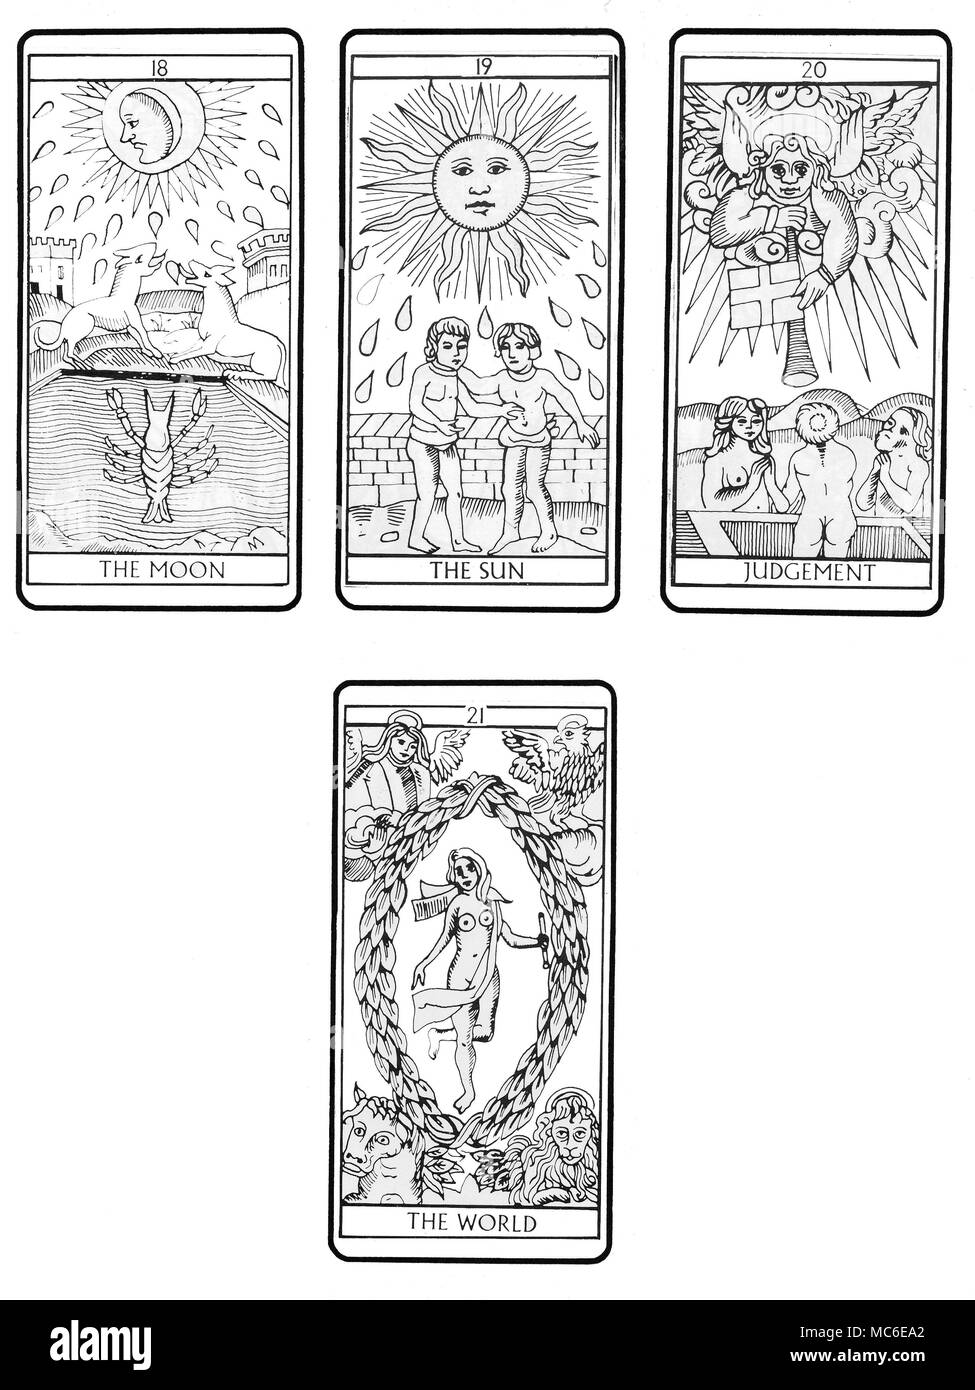 Cartes de TAROT DE MARSEILLE - PLATE-FORME Le quatrième et dernier lot (de  quatre) dans l'ordre de 22 cartes de Tarot (en fonction de la conception de  Marseille traditionnel), à partir de